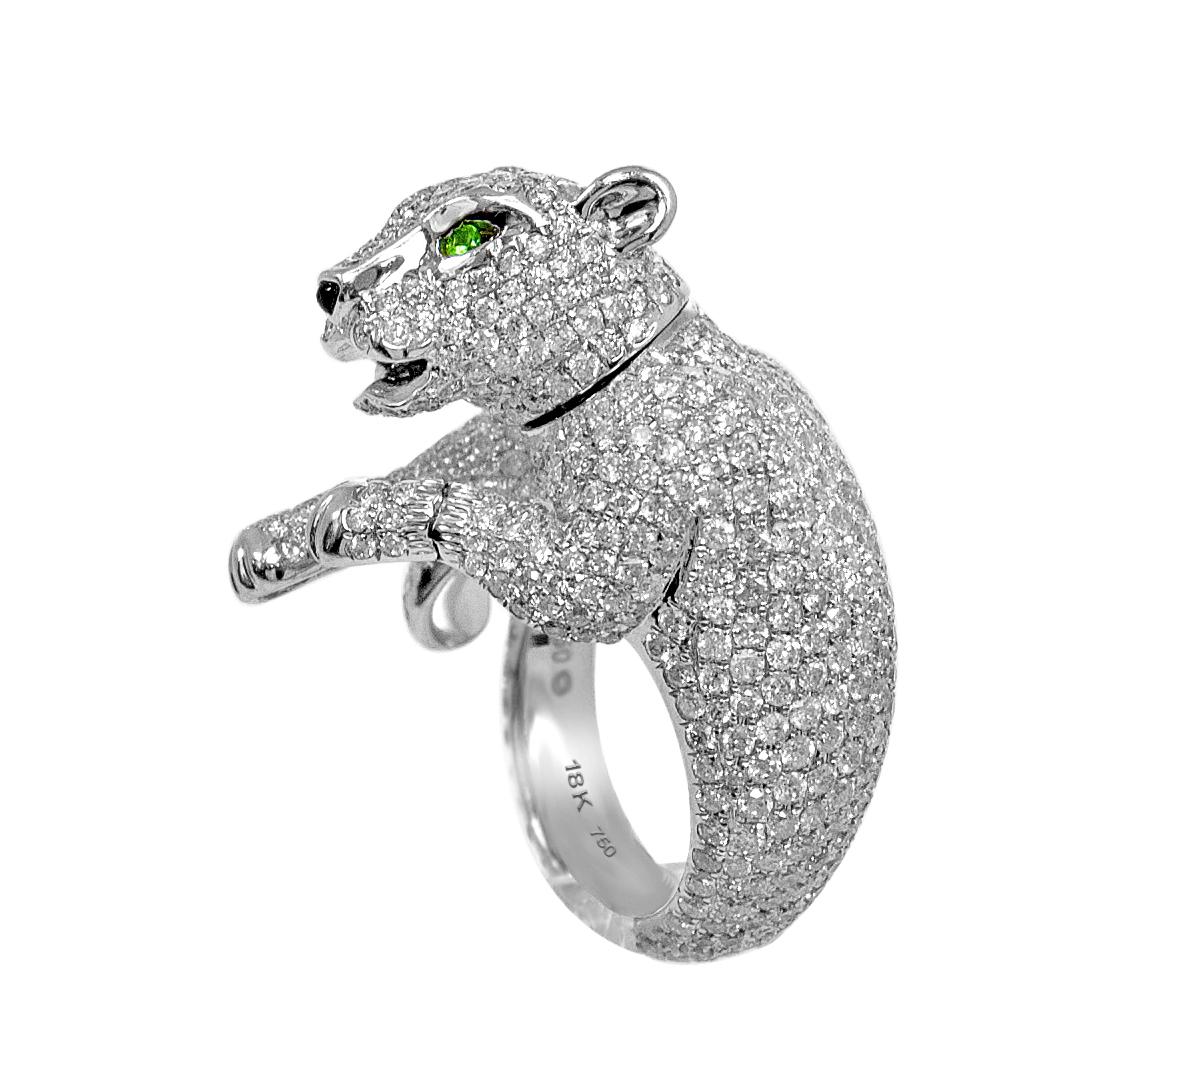 Diamond Panther Ring 18 Karat White Gold with Green Eyes Animal Statement Ring For Sale